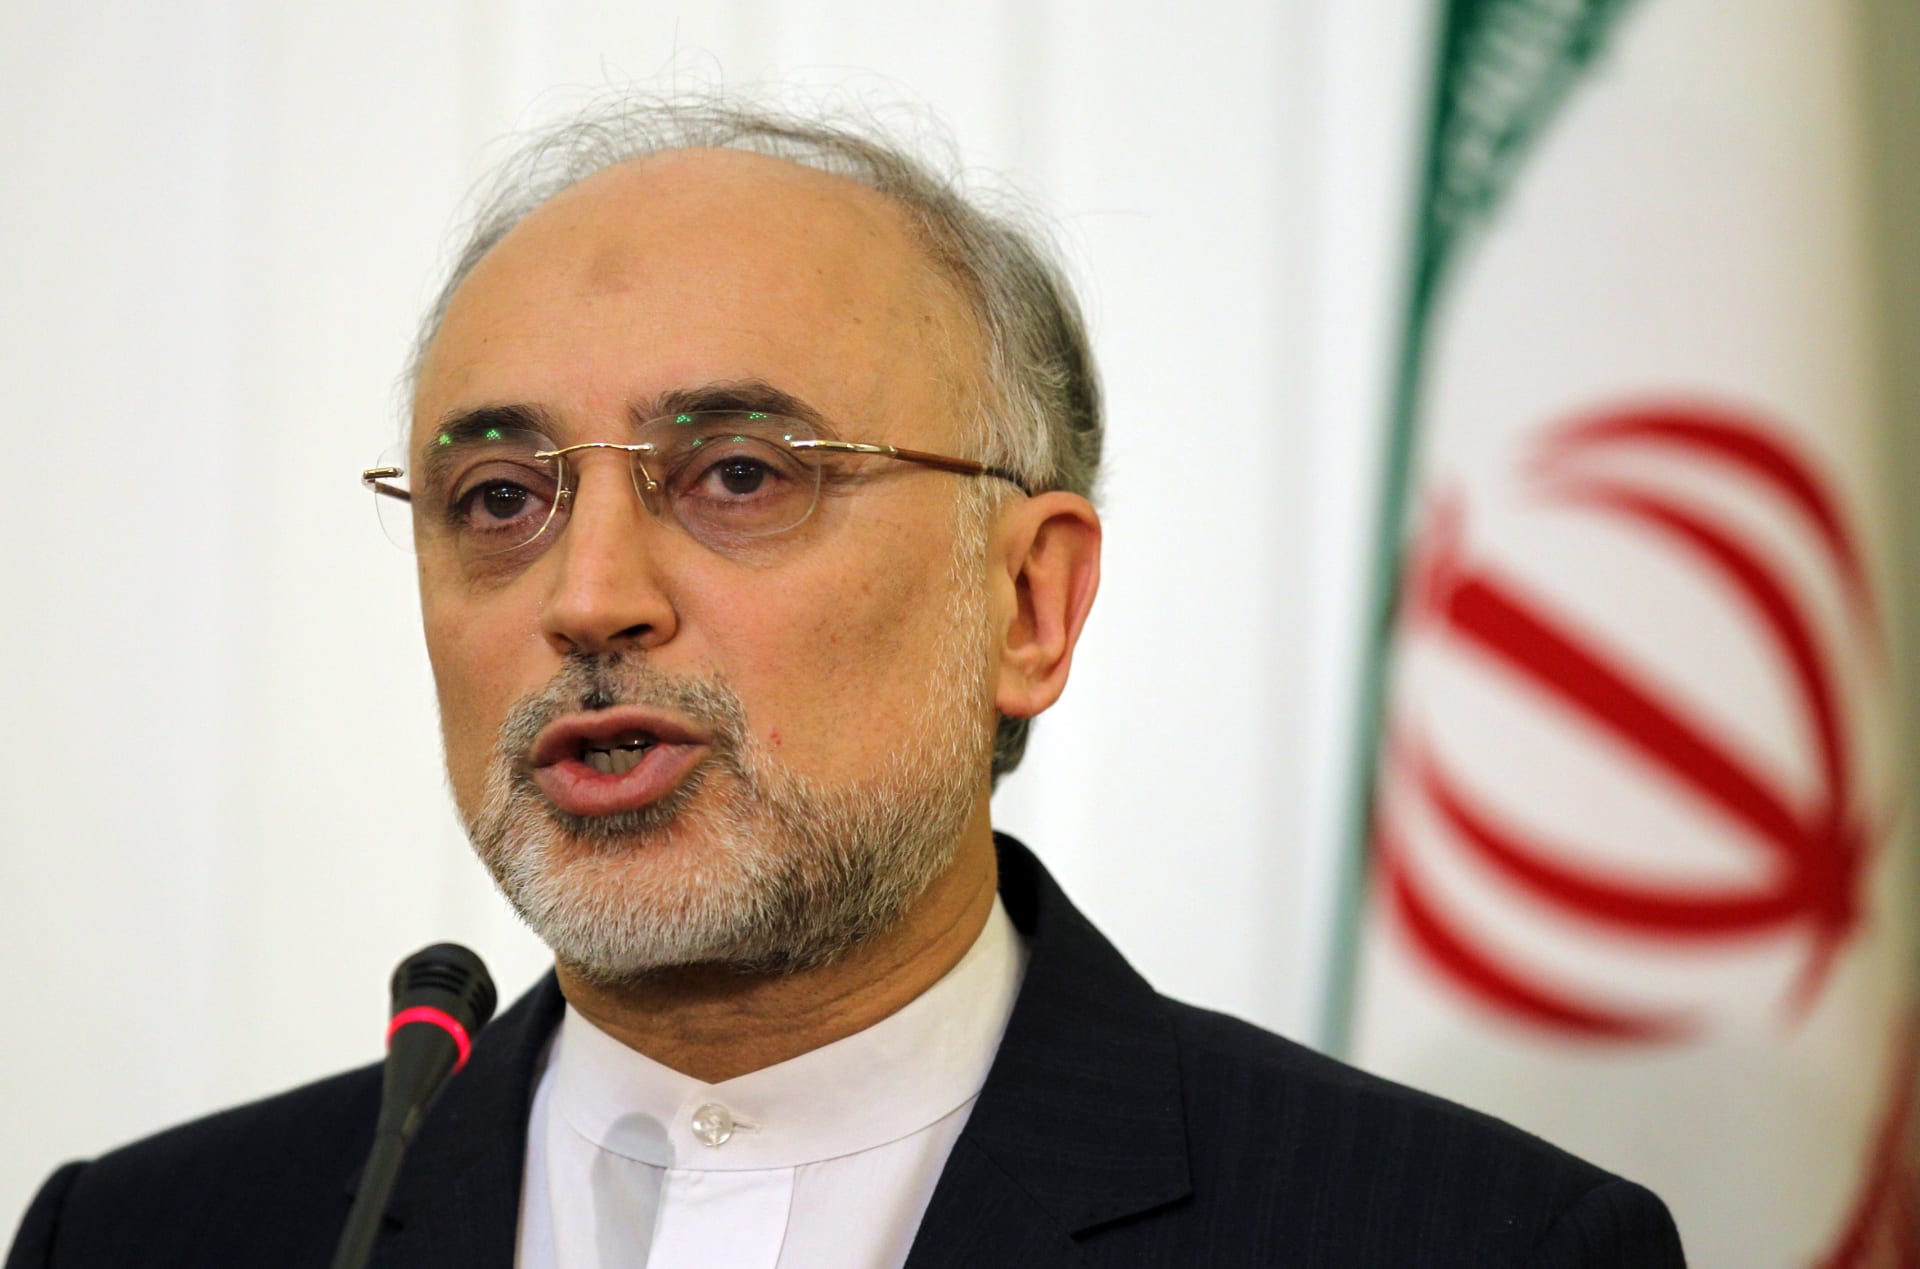 طهران: فرض عقوبات أمريكية على الطاقة الذرية الإيرانية ورئيسها "خطوة صبيانية" لا قيمة لها  